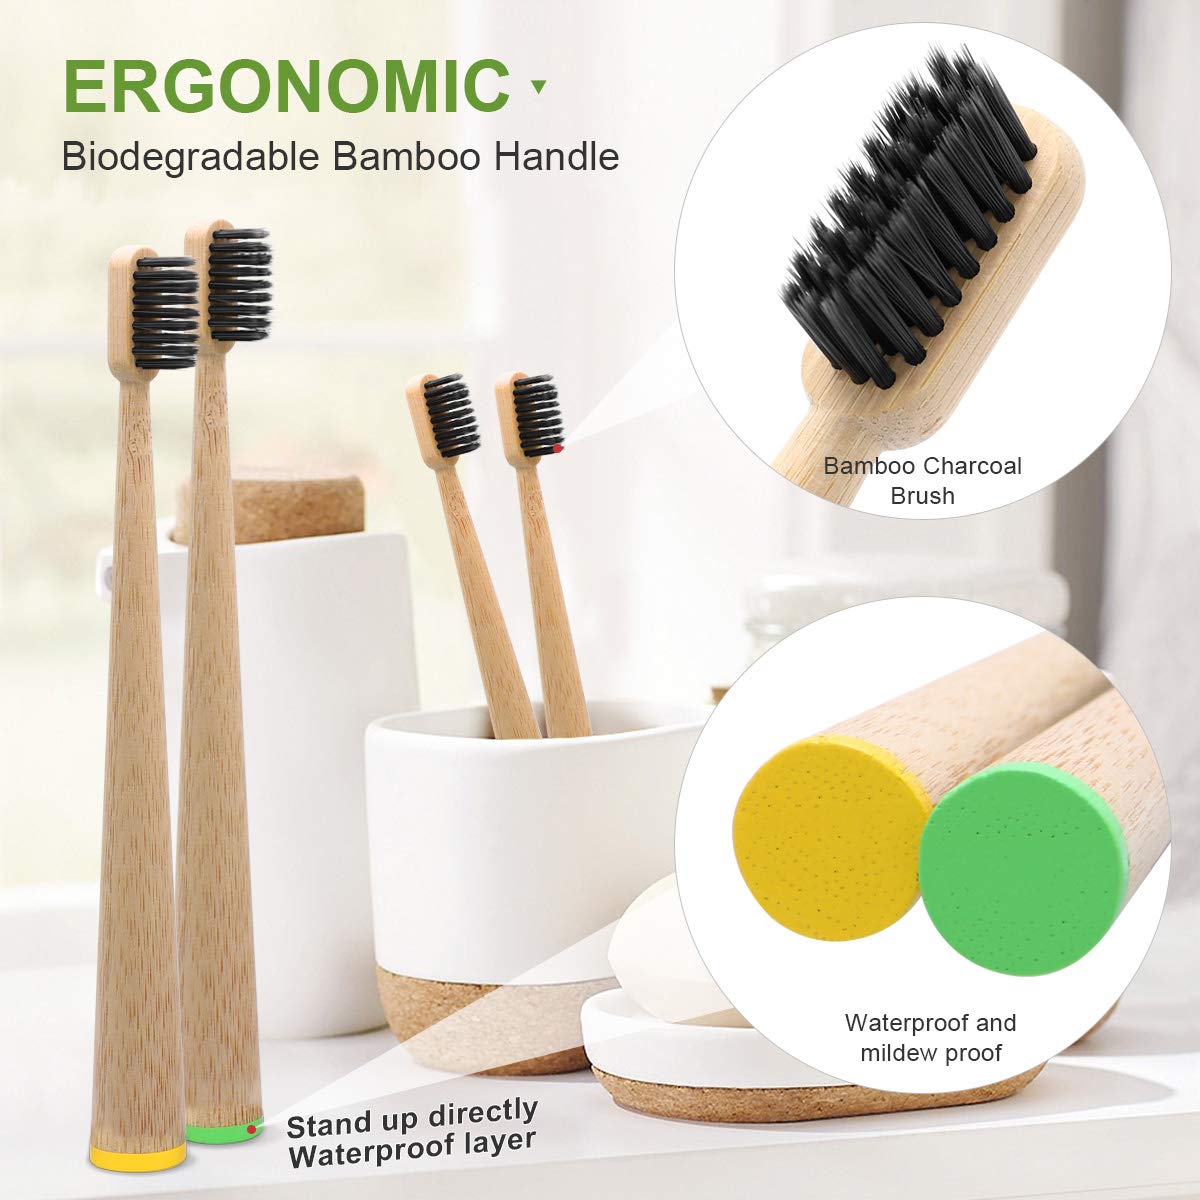 Tiaki Waha Ka taea te Recyclable Eco Friendly me te Biodegradable Travel Bamboo Toothbrush